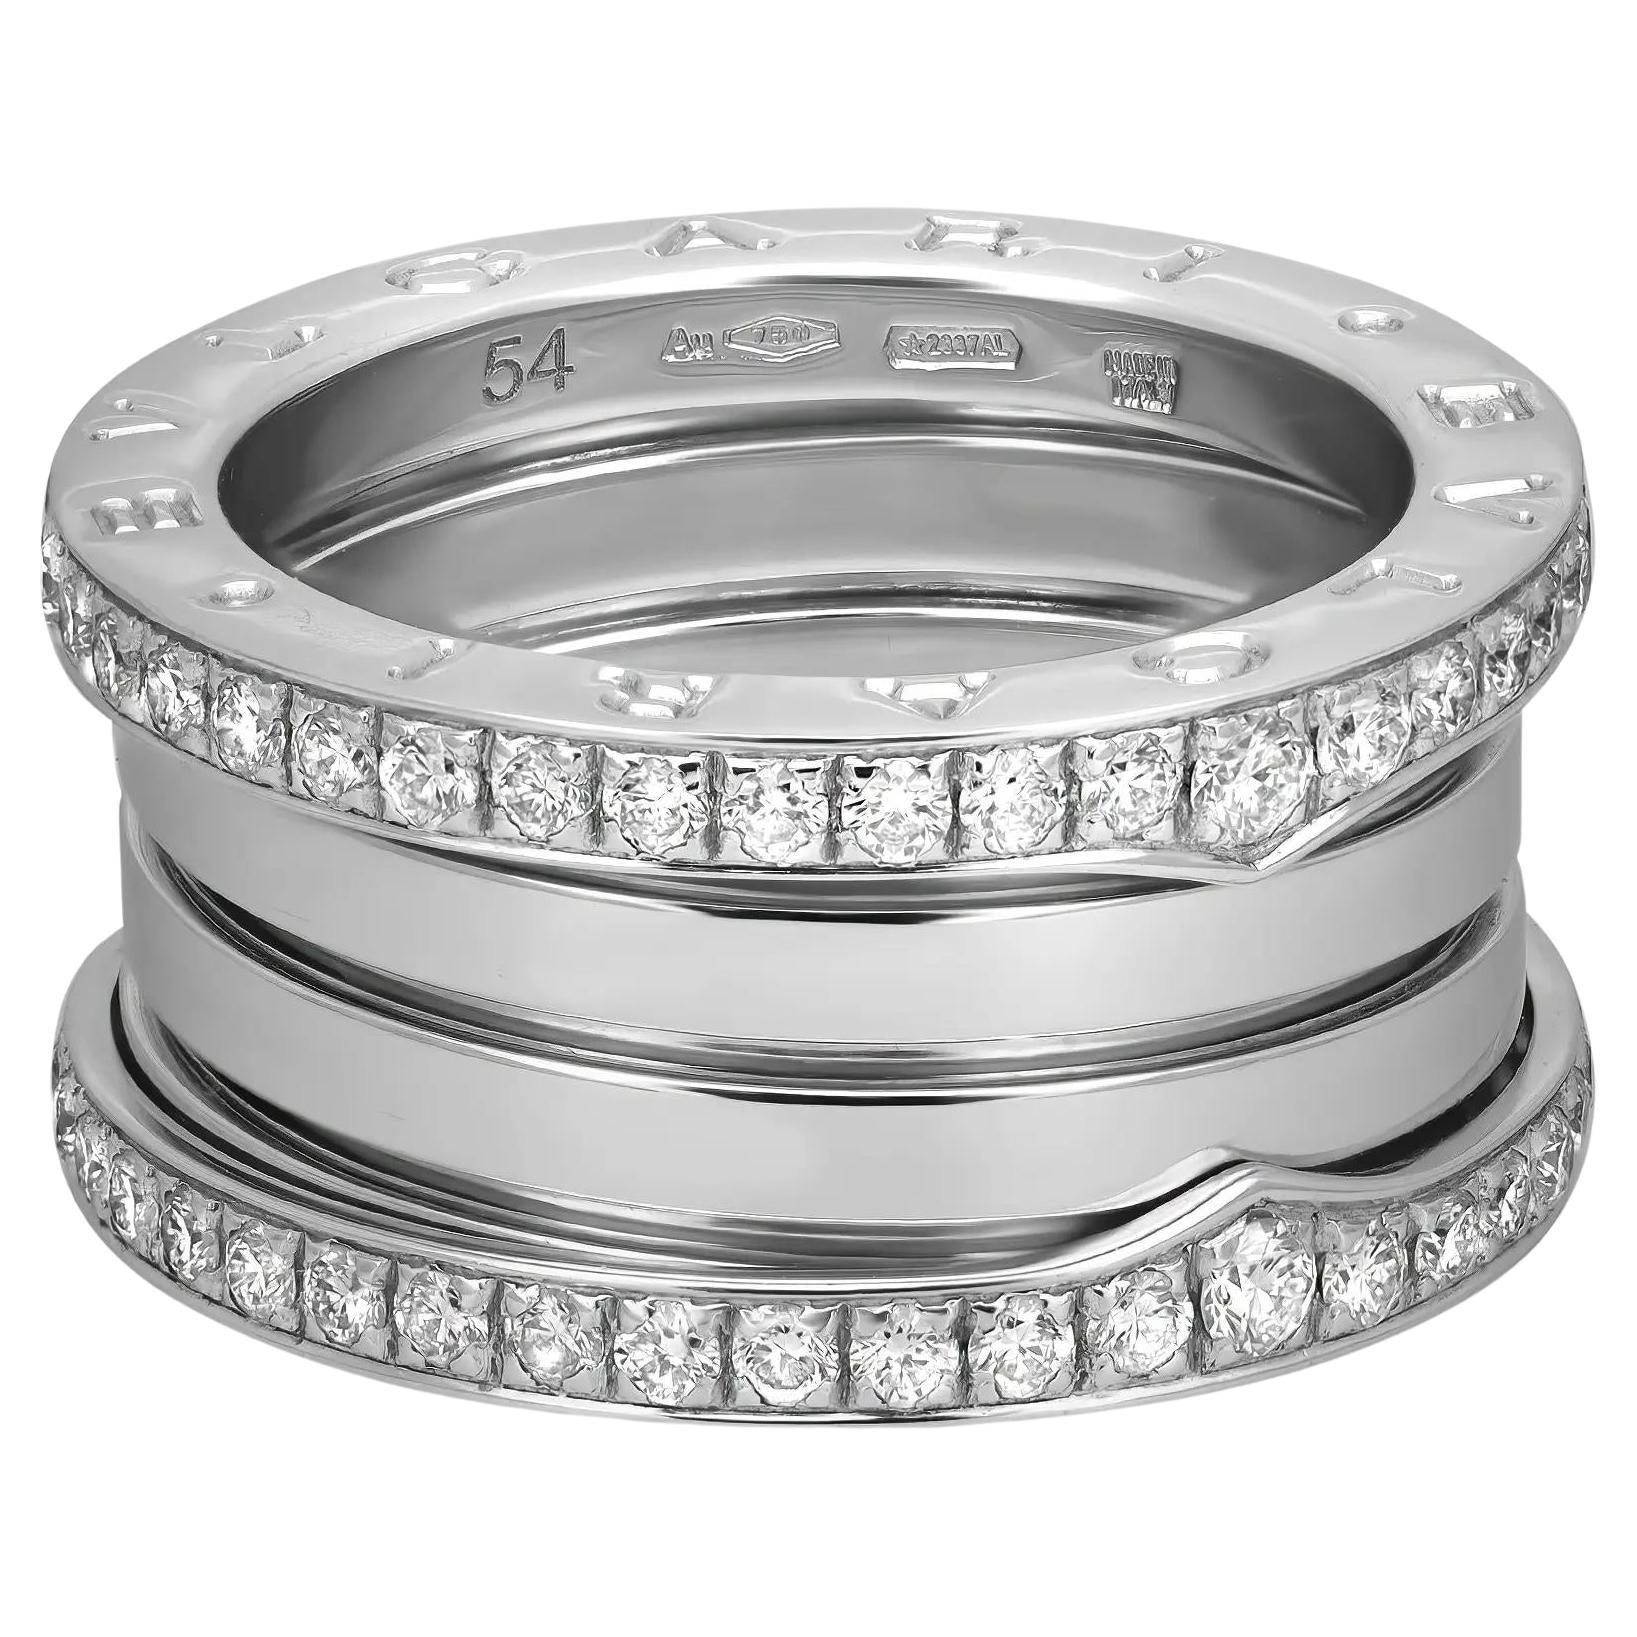 Bvlgari B.Zero1 Diamond Four Band Ring 18K White Gold Size 54 US 6.75